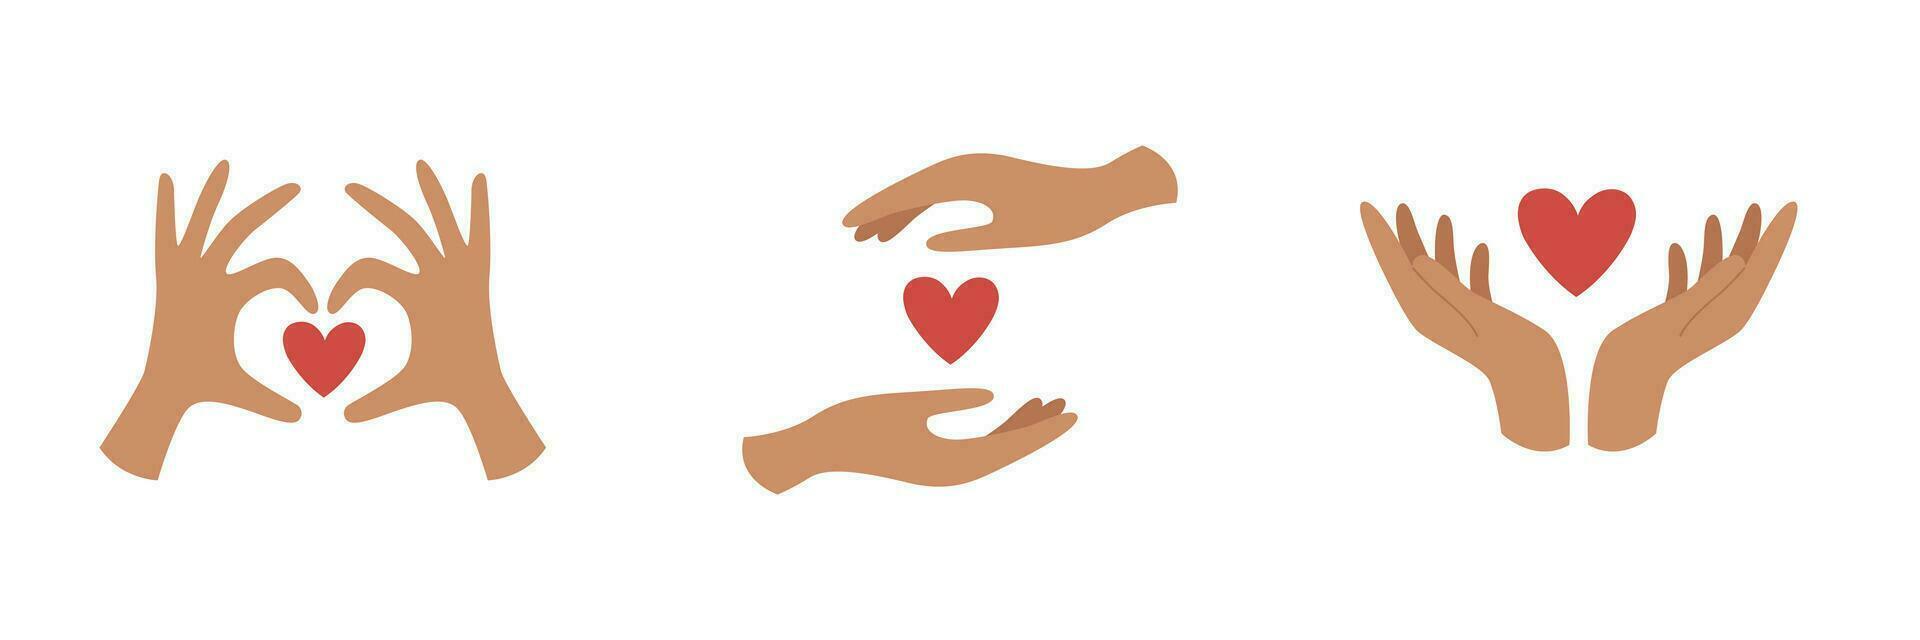 einstellen von Hände halten Herzen. Liebe, Pflege und Empathie Konzept. vektor